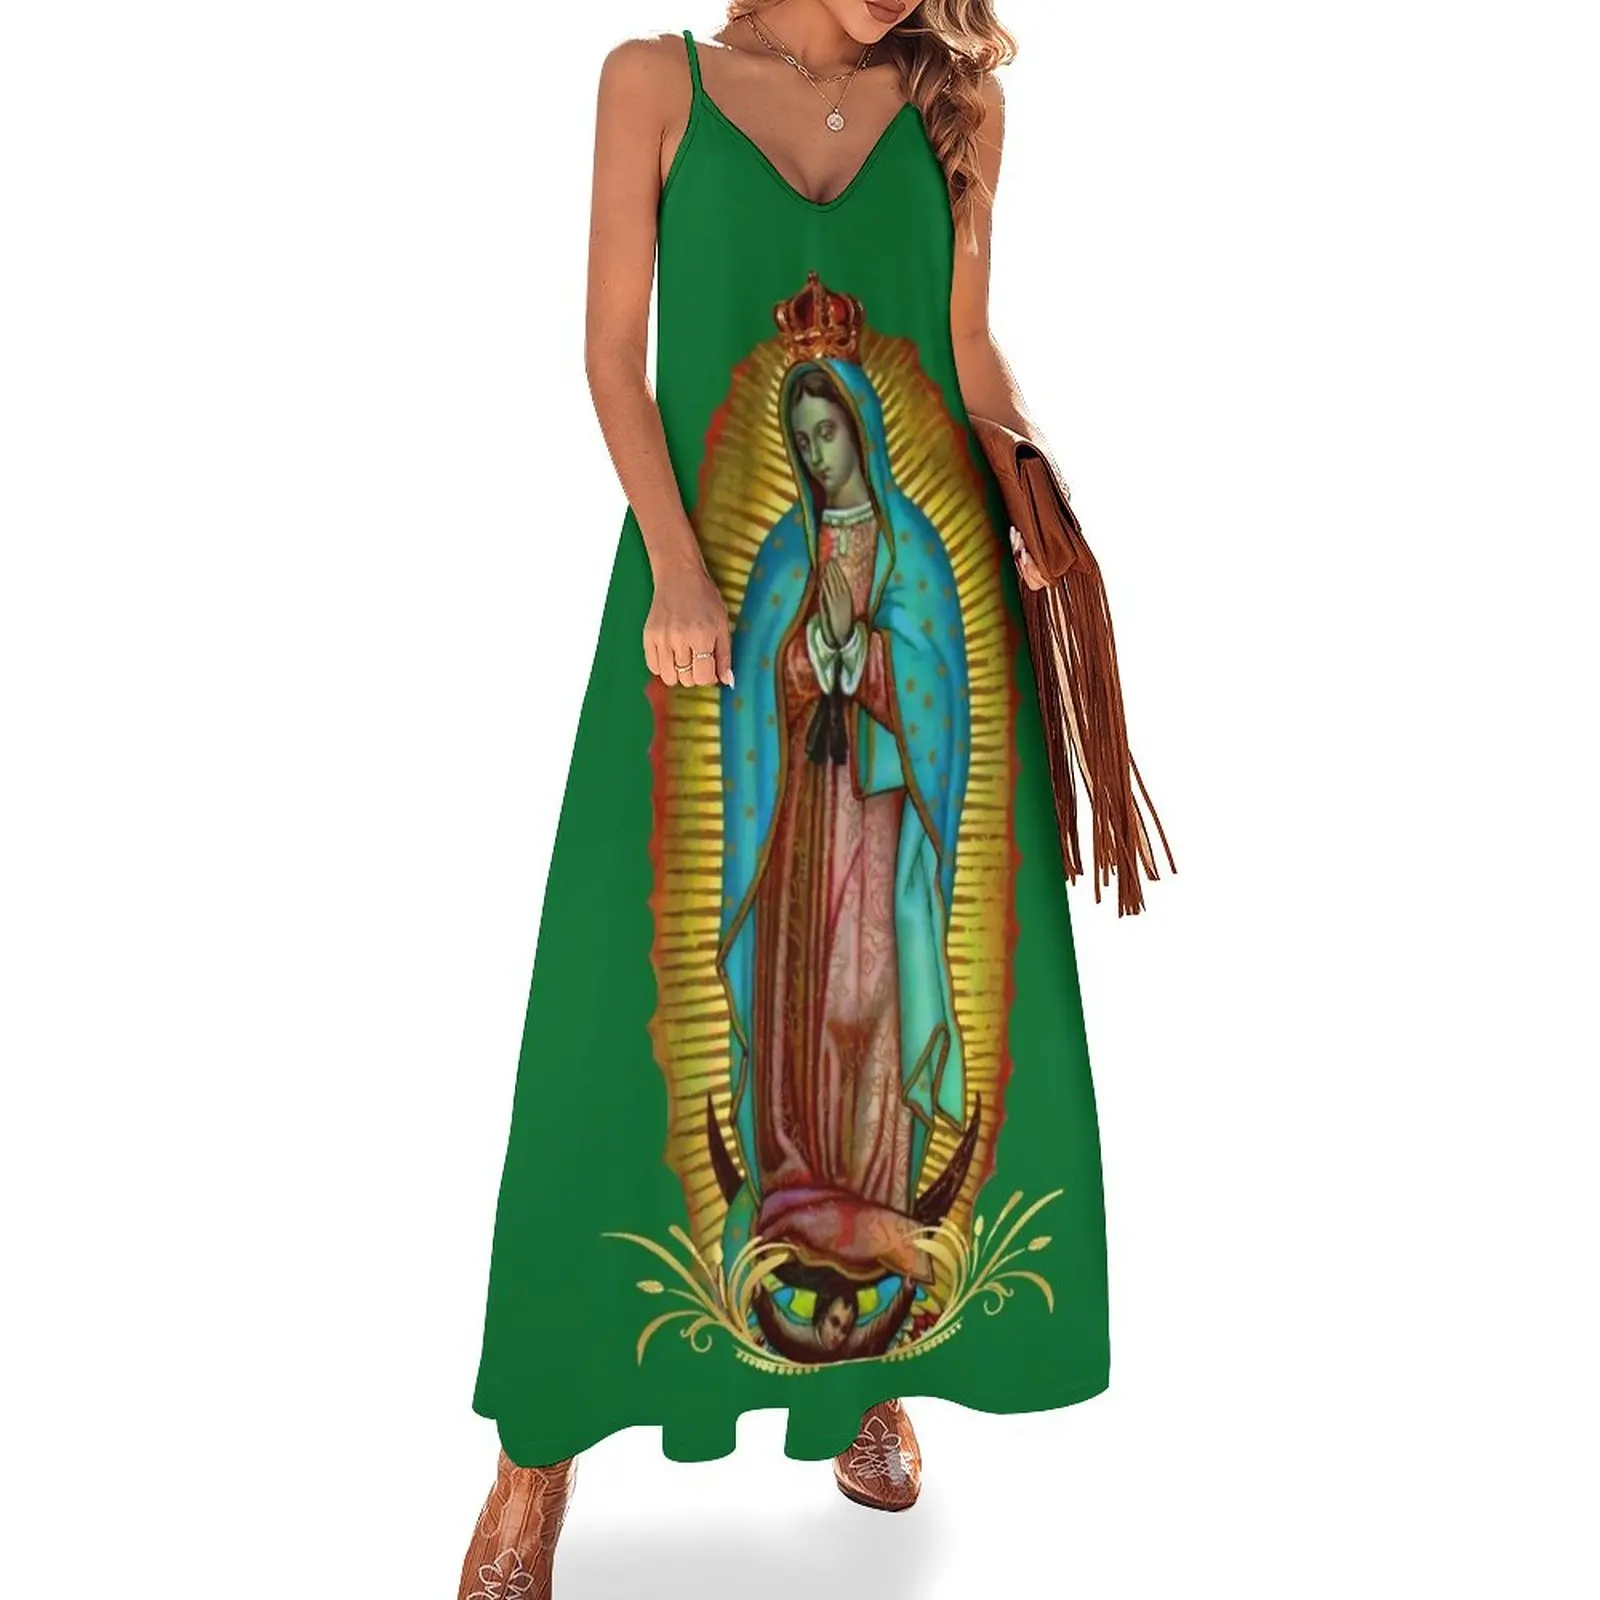 

New Our Lady of Guadalupe Virgin Mary 07 Sleeveless Dress Women's skirt Women's summer dress elegant women's dresses for wedding